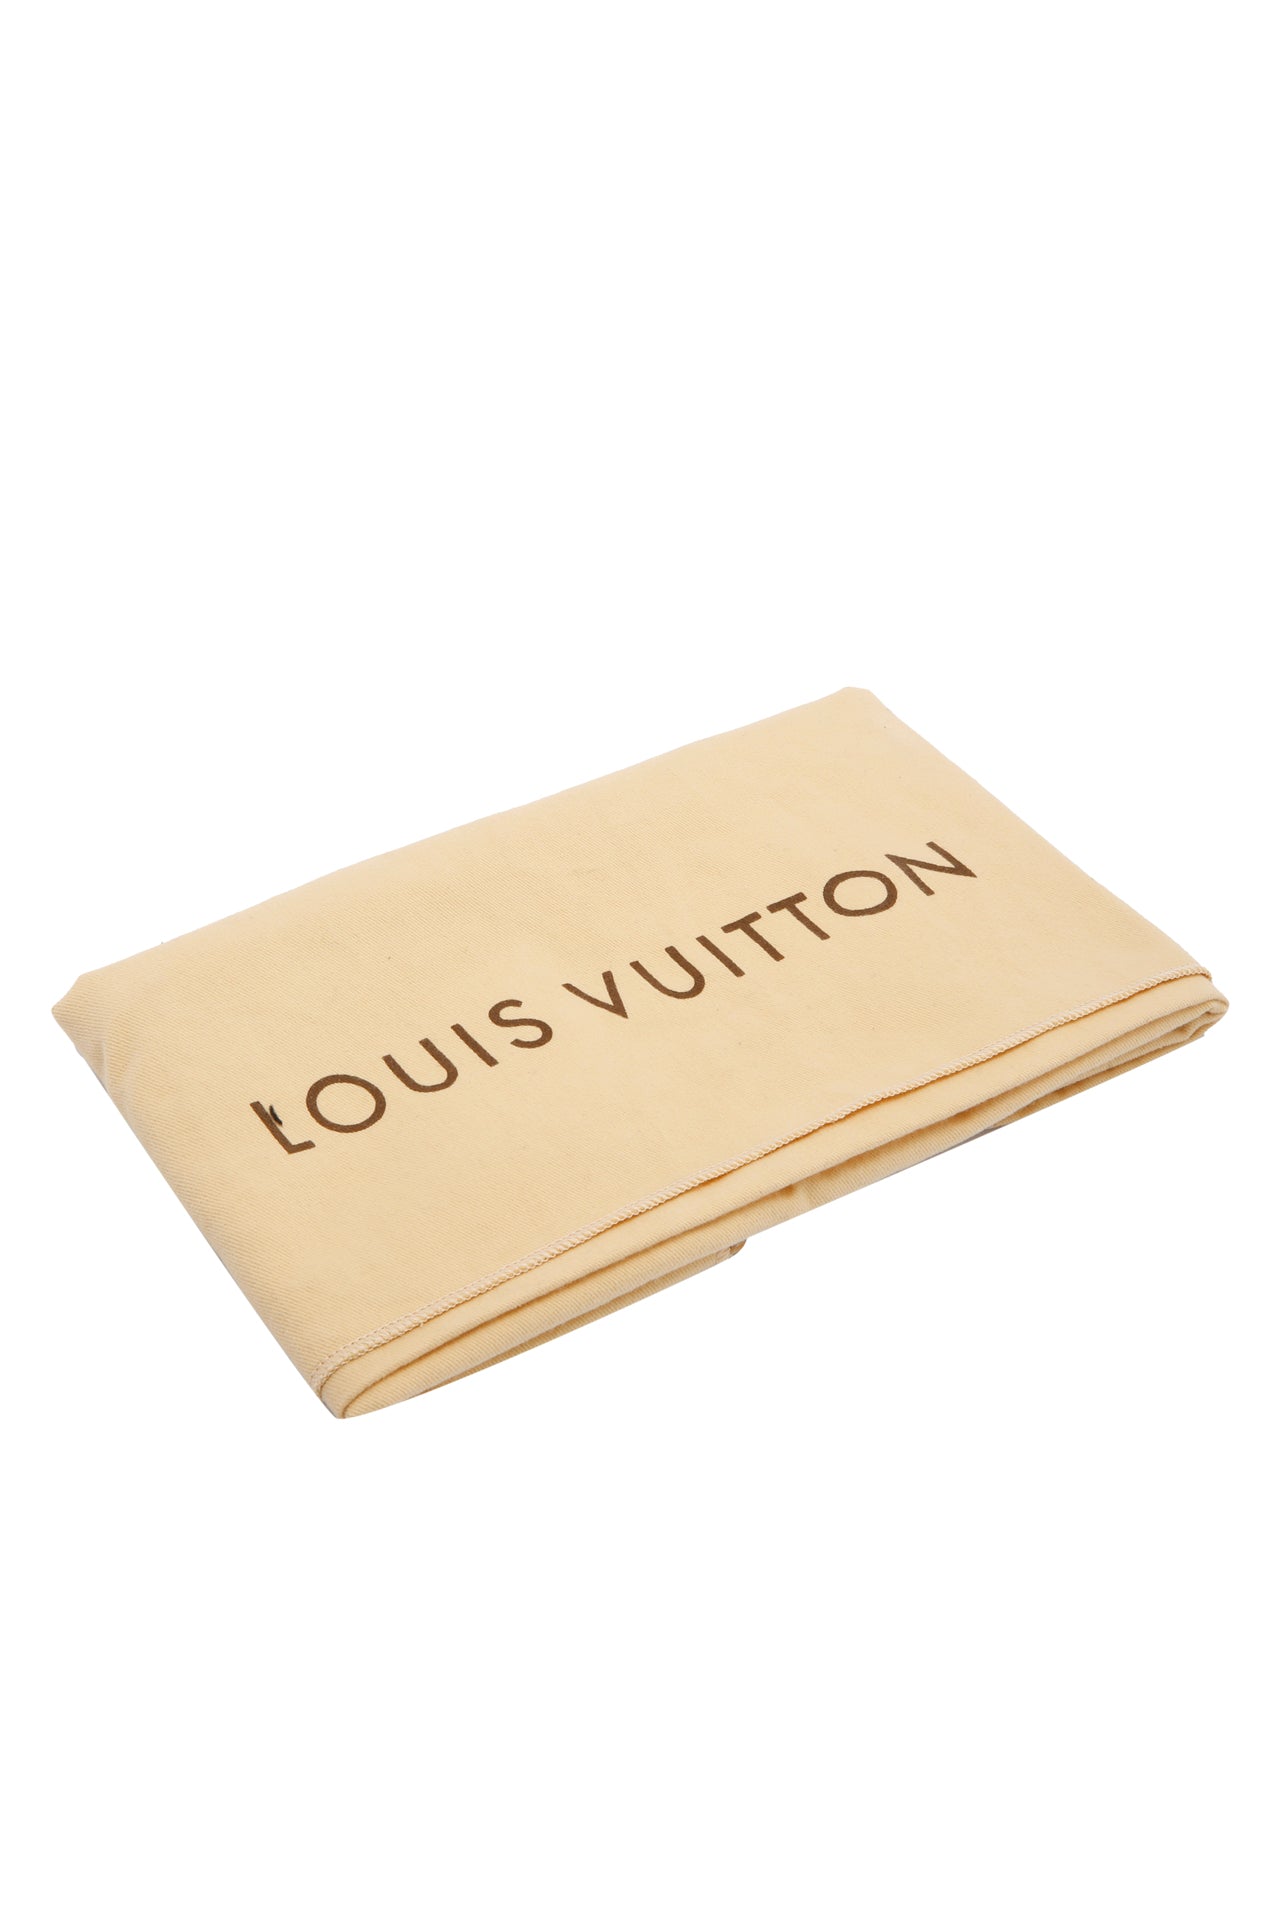 Louis Vuitton Damier Azur Speedy 30